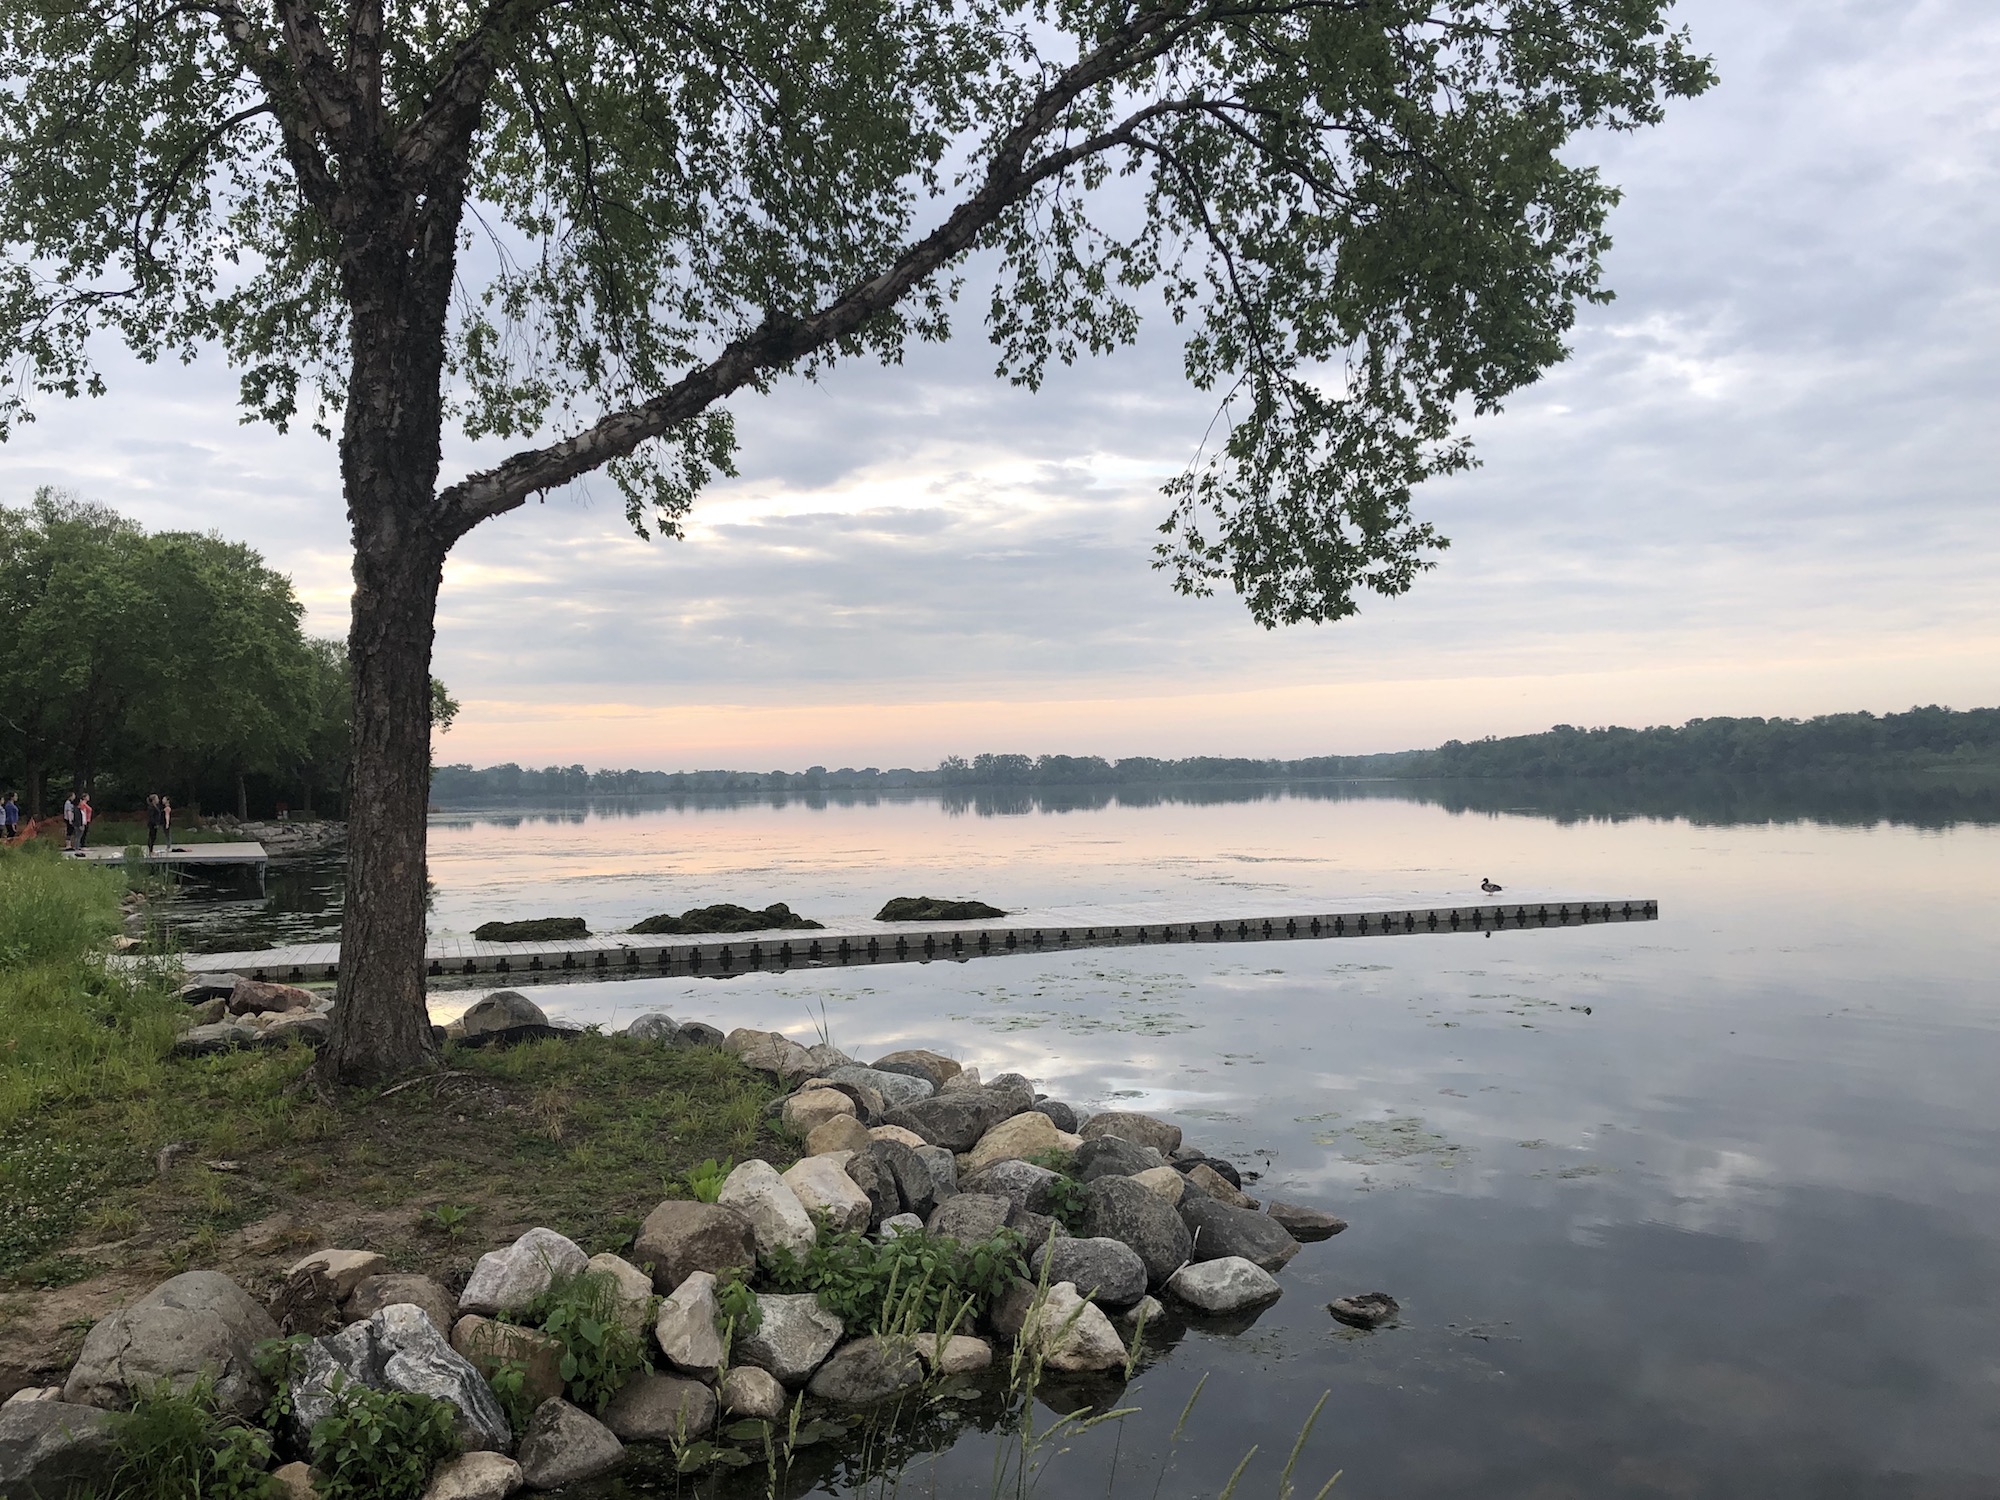 Lake Wingra on June 18, 2019.